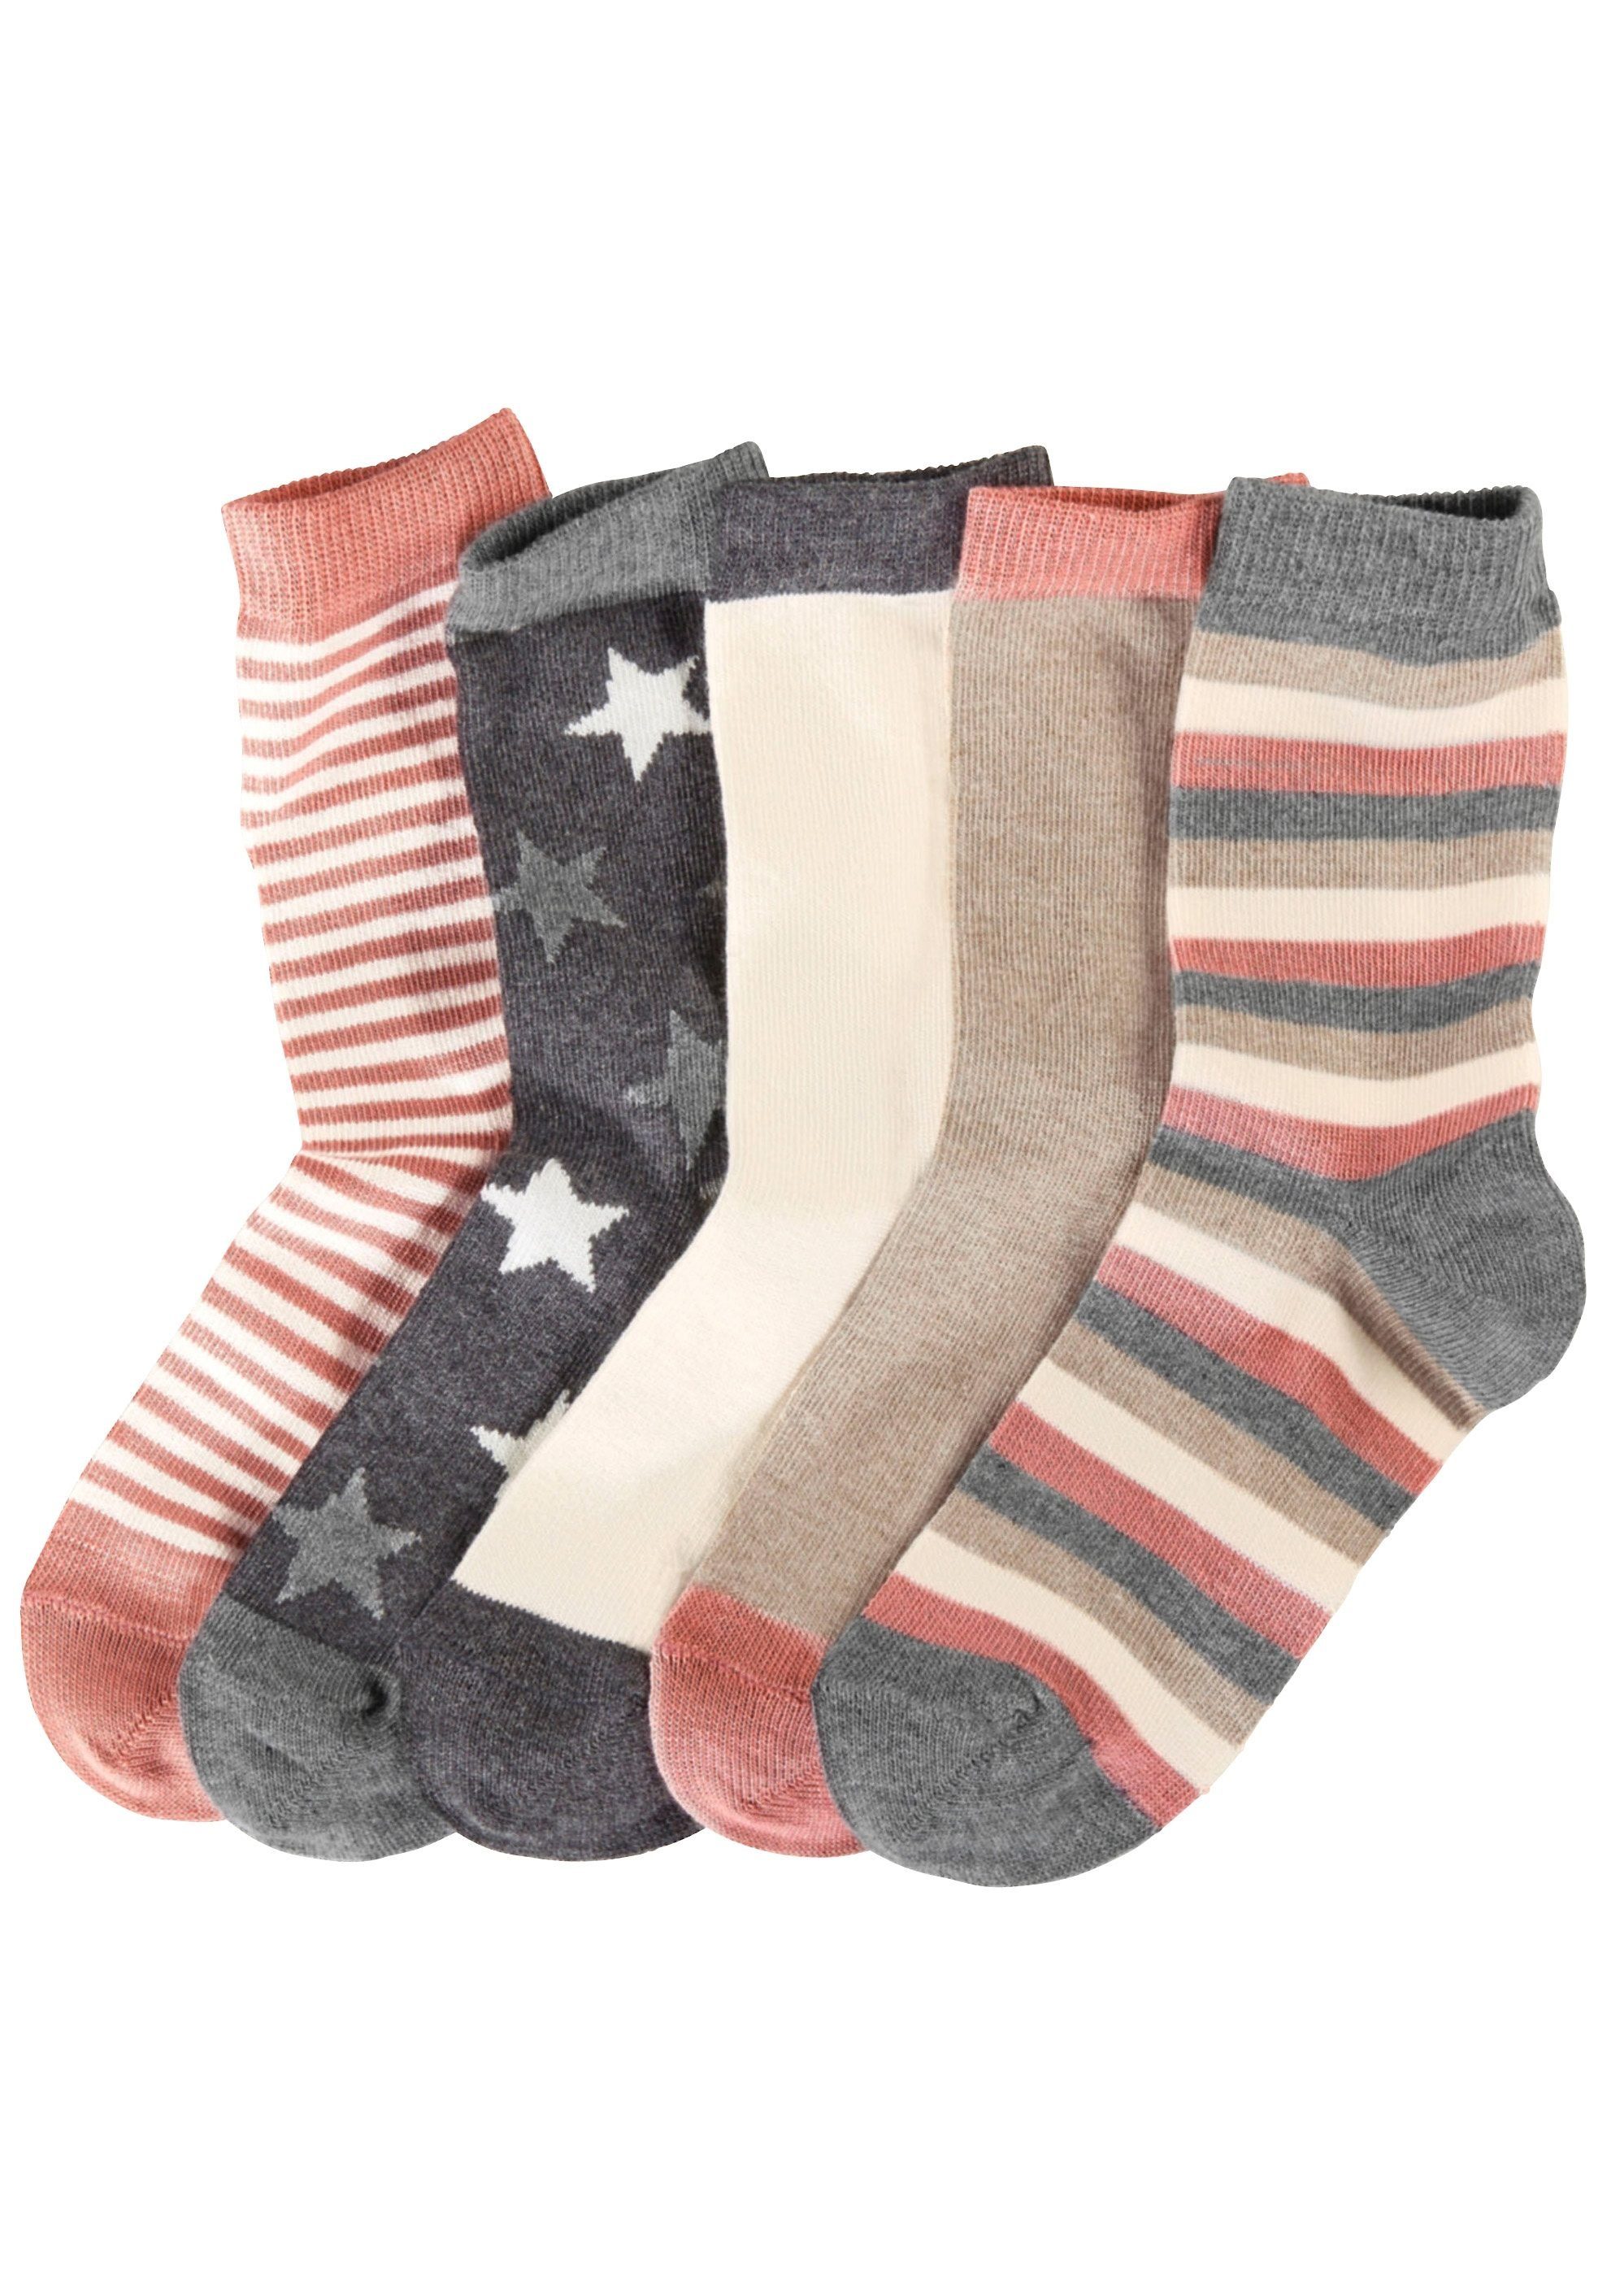 Designs 5 Socken in (5-Paar) verschiedenen